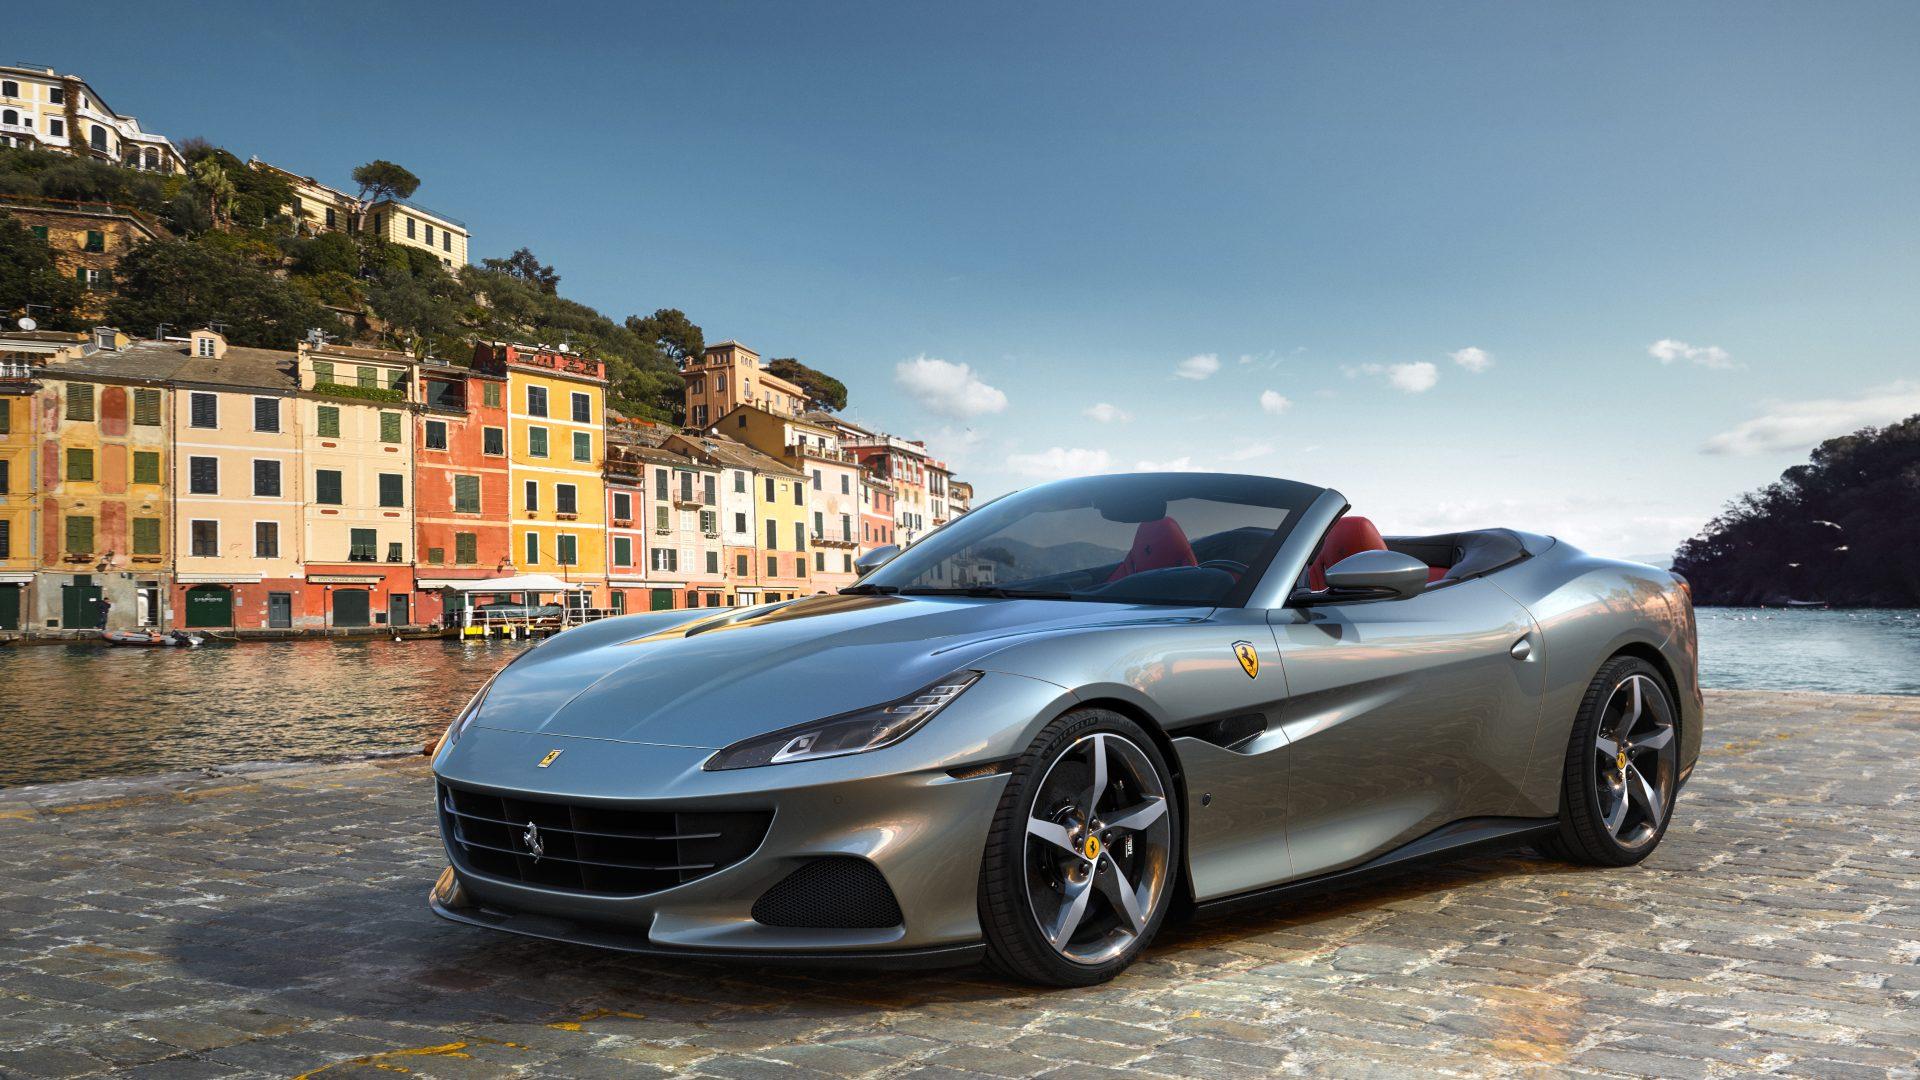 El nuevo Ferrari Portofino M trae novedades y un extra de potencia